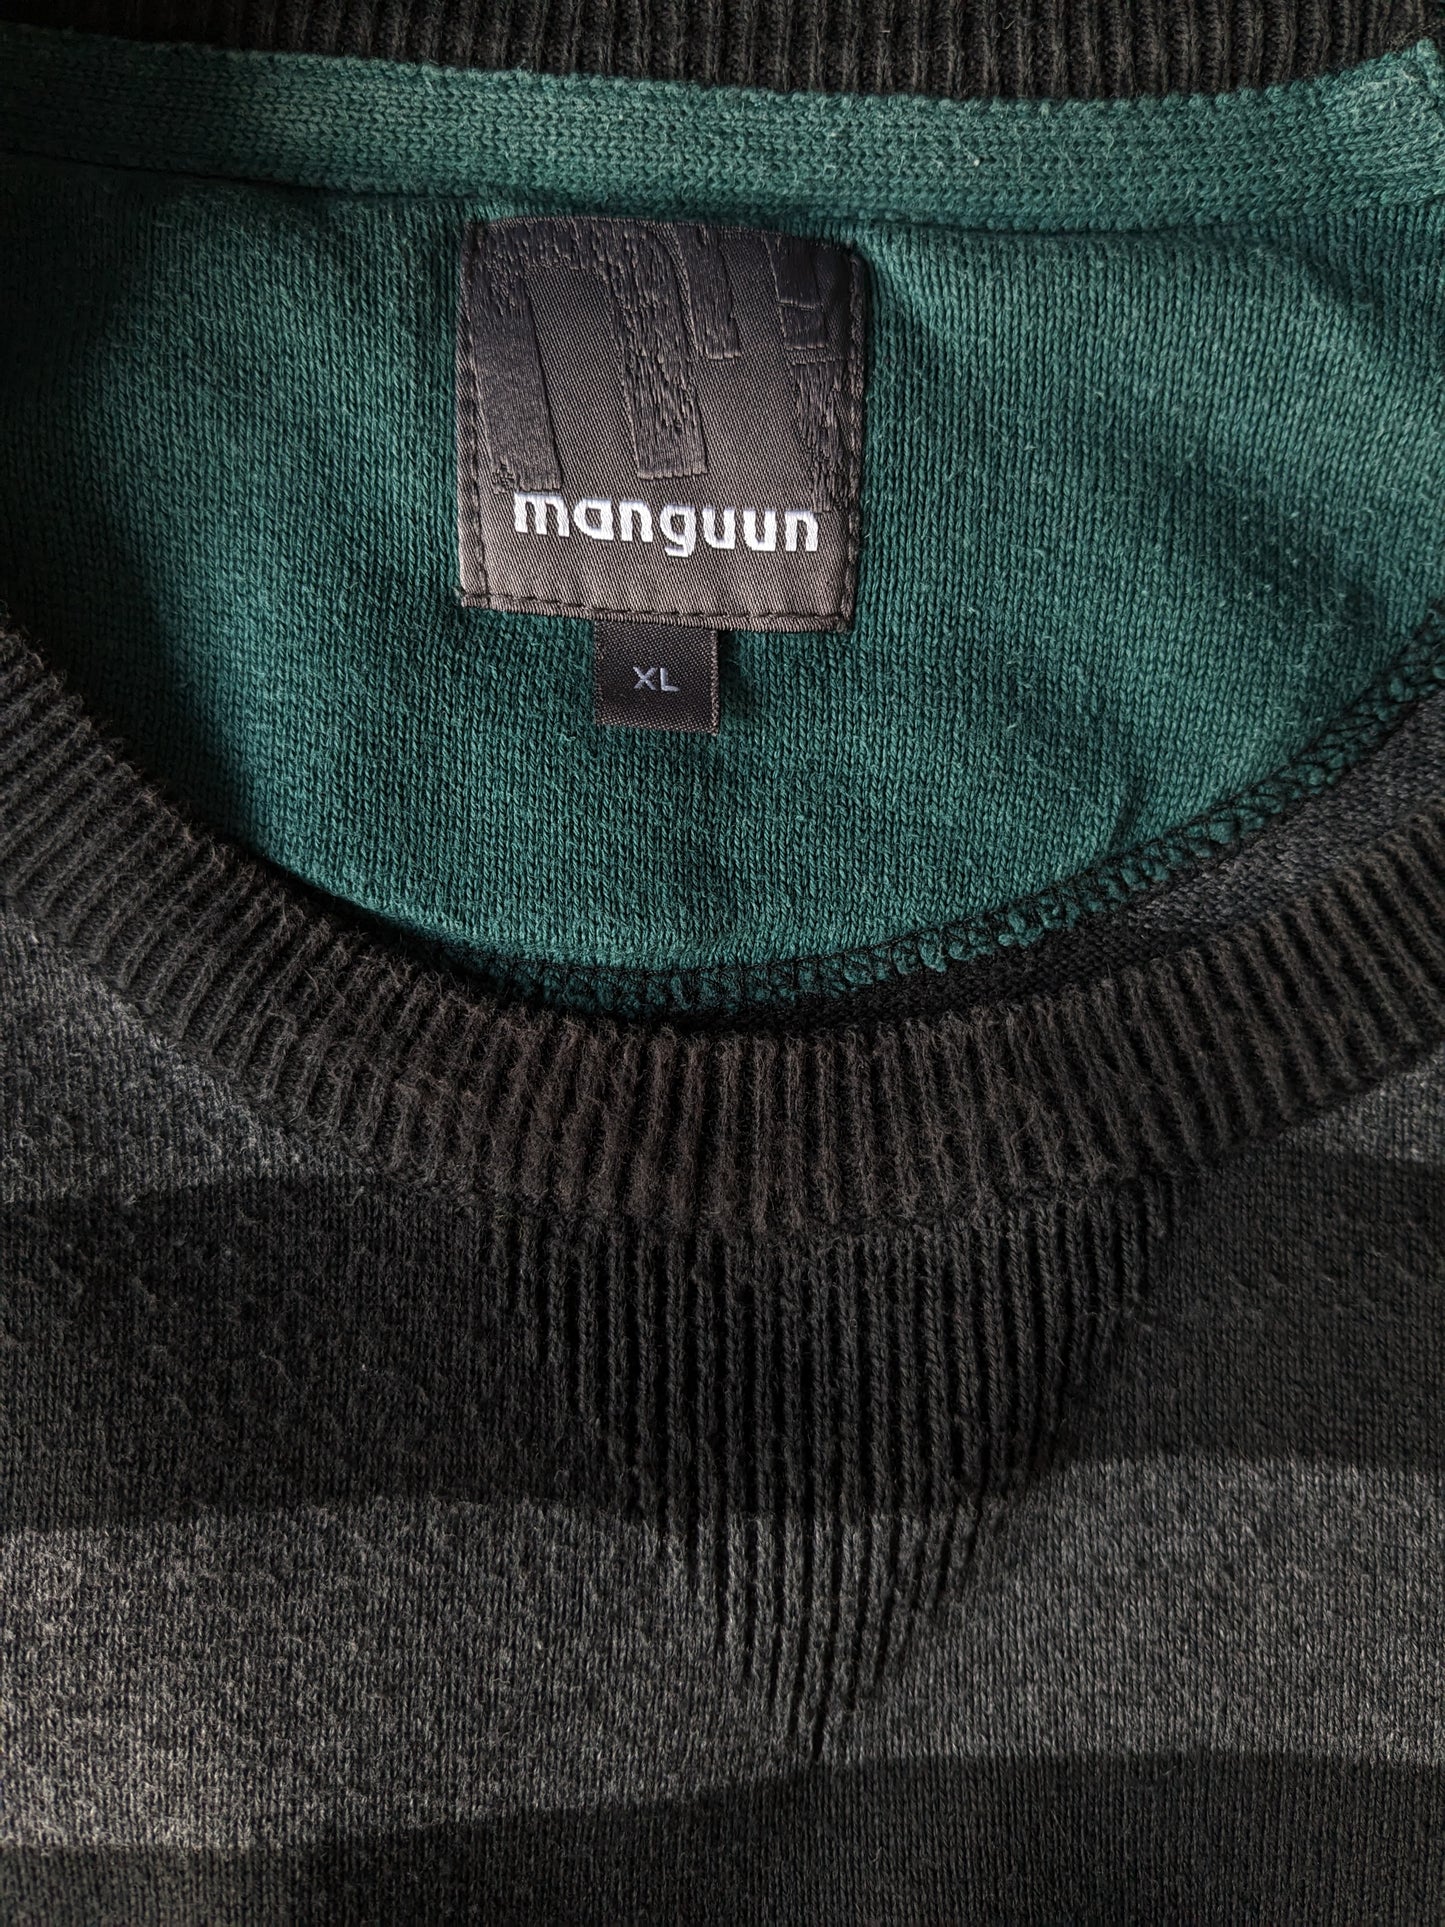 Manguun casual trui met elleboogstukken. Zwart grijs gestreept. Maat XL.